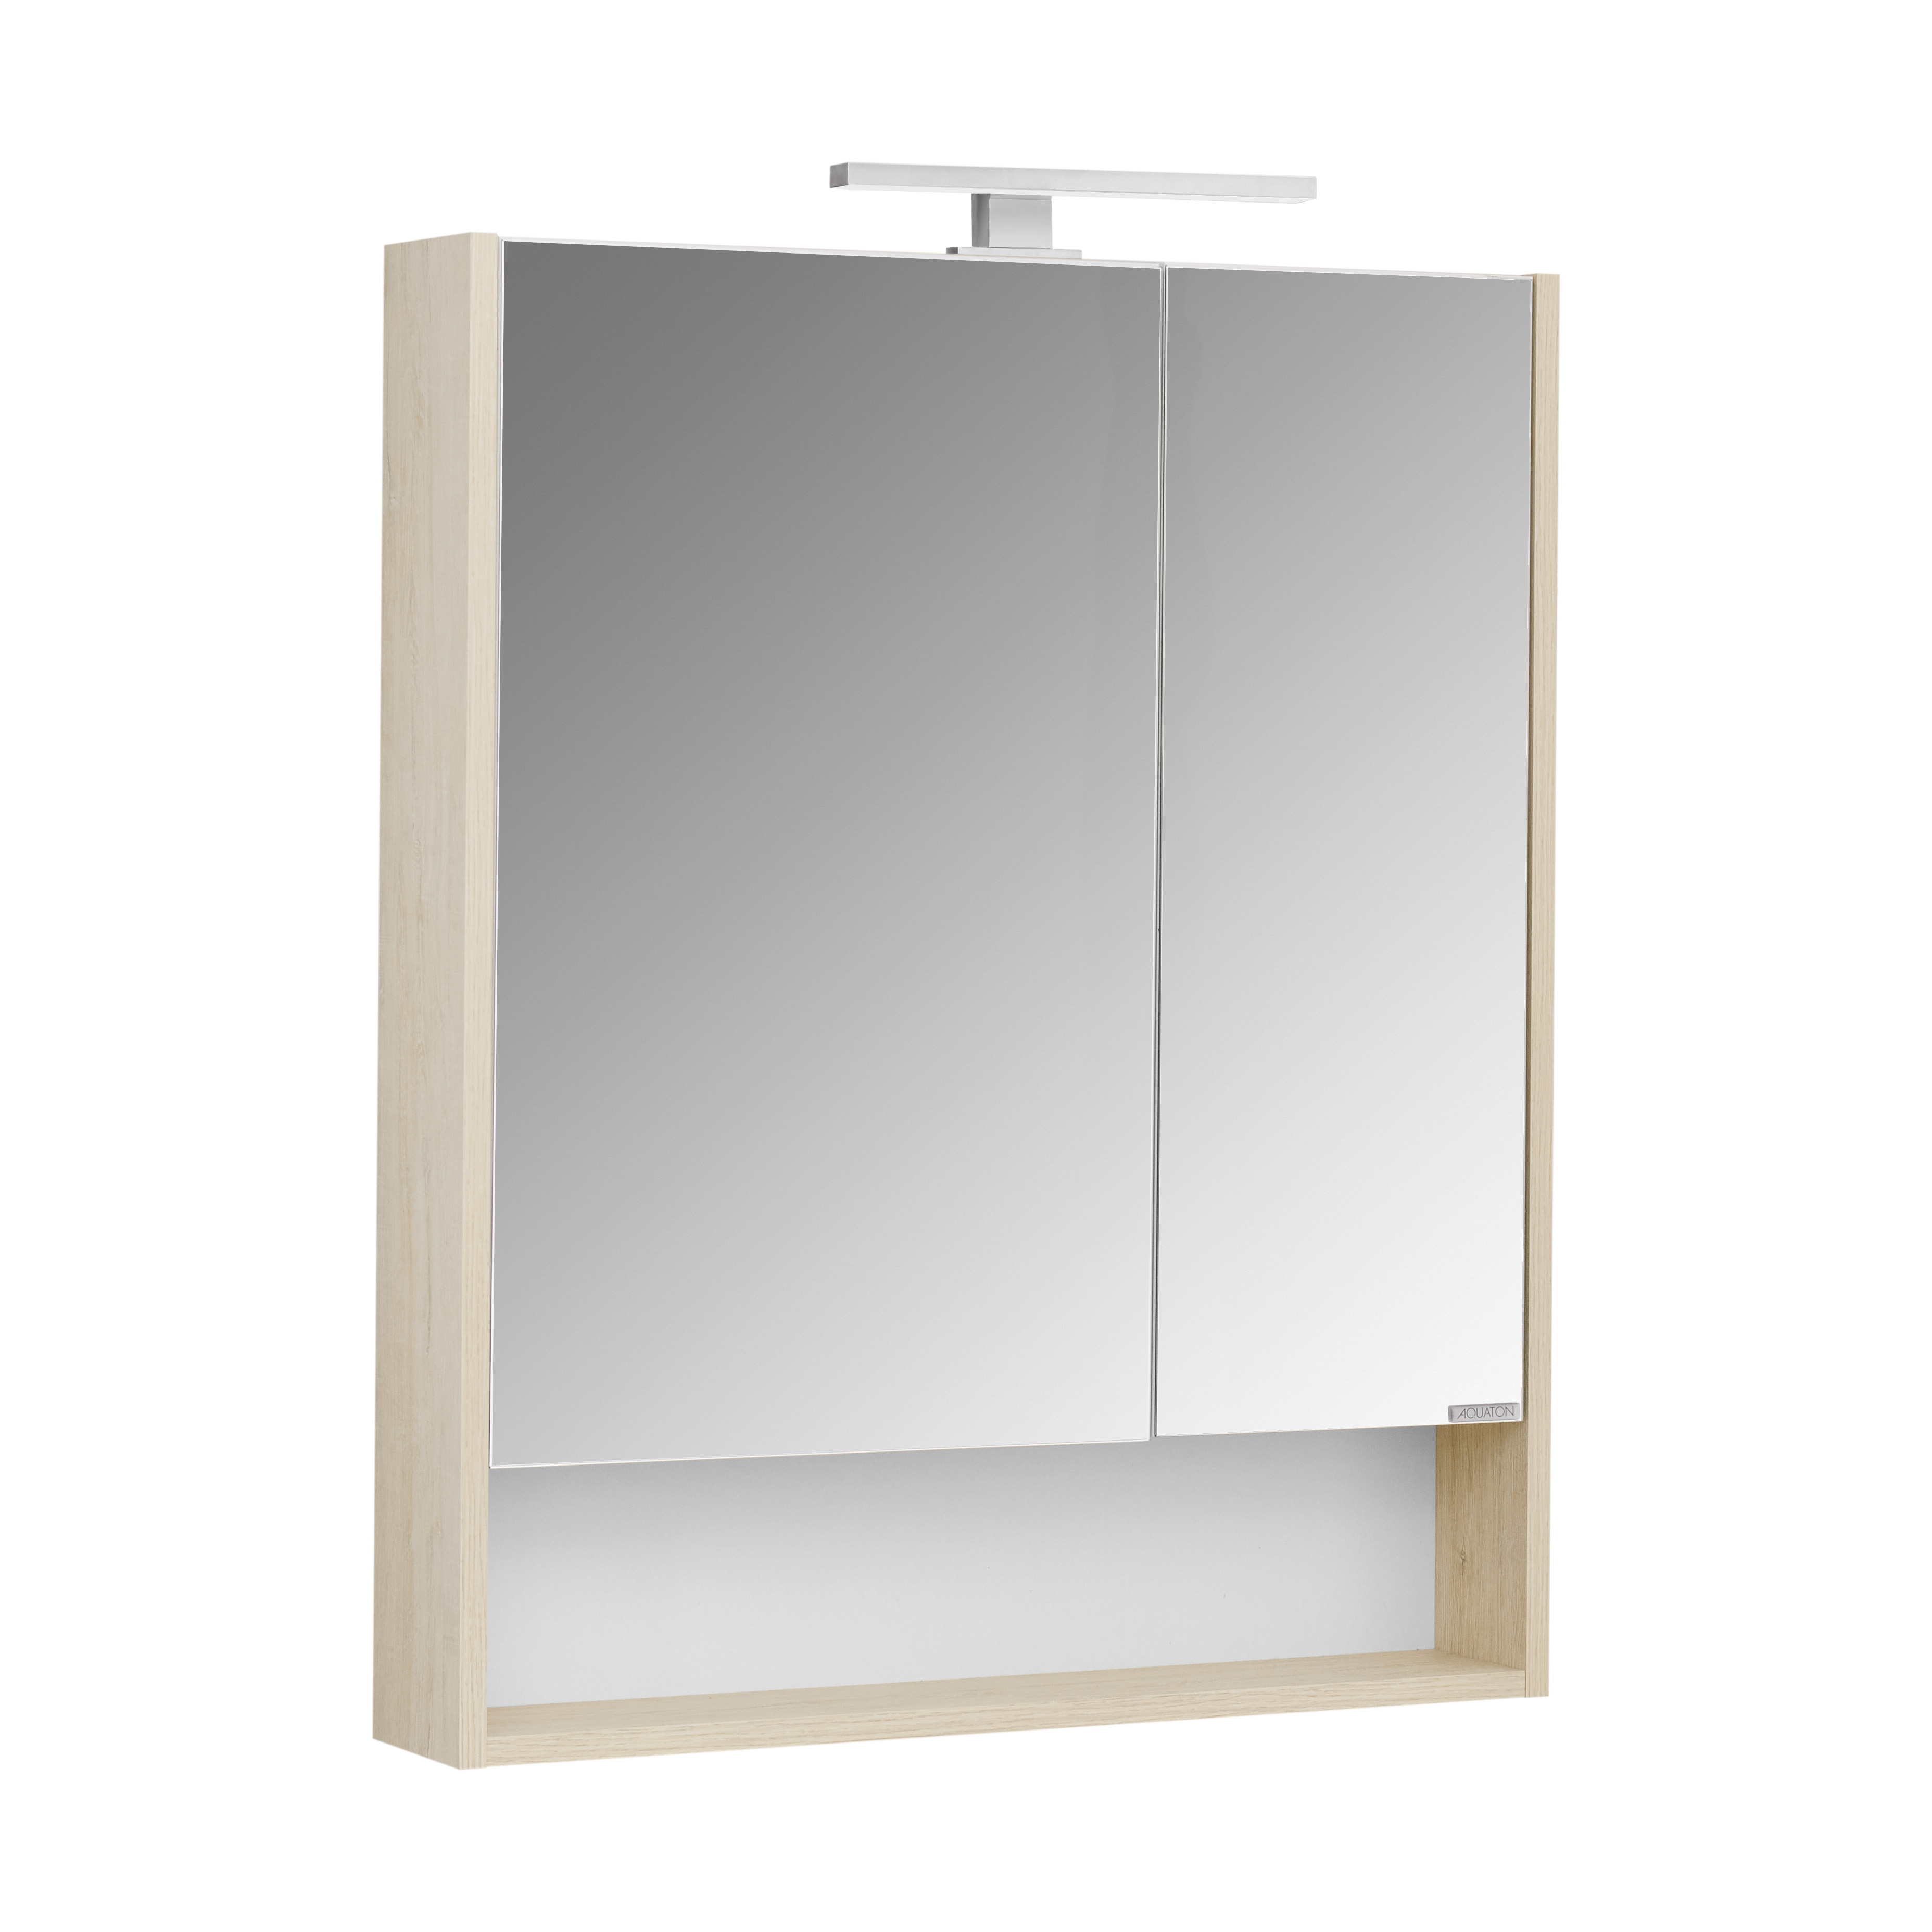 Зеркальный шкаф Акватон Сканди 1A252202SDB20 70 см, белый - фото 3